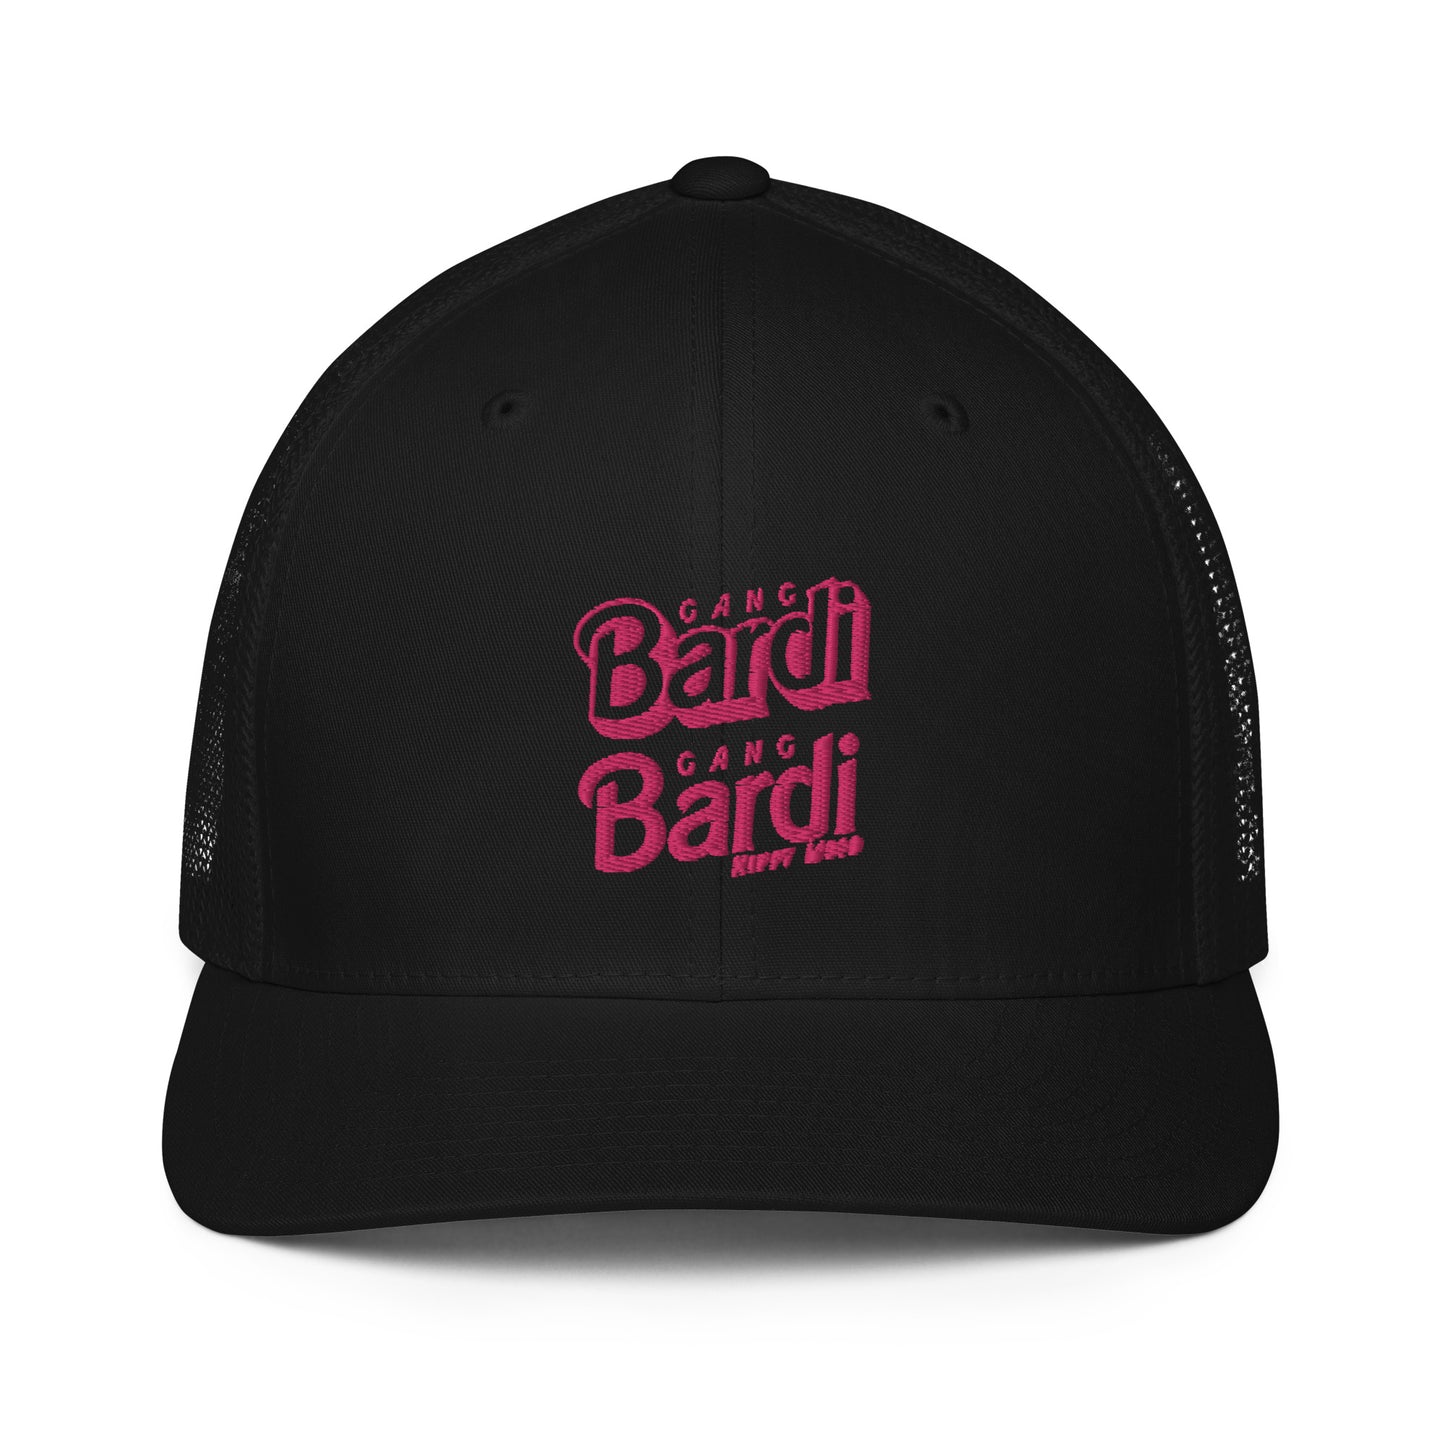 Gang Bardi Print | Closed-back trucker cap